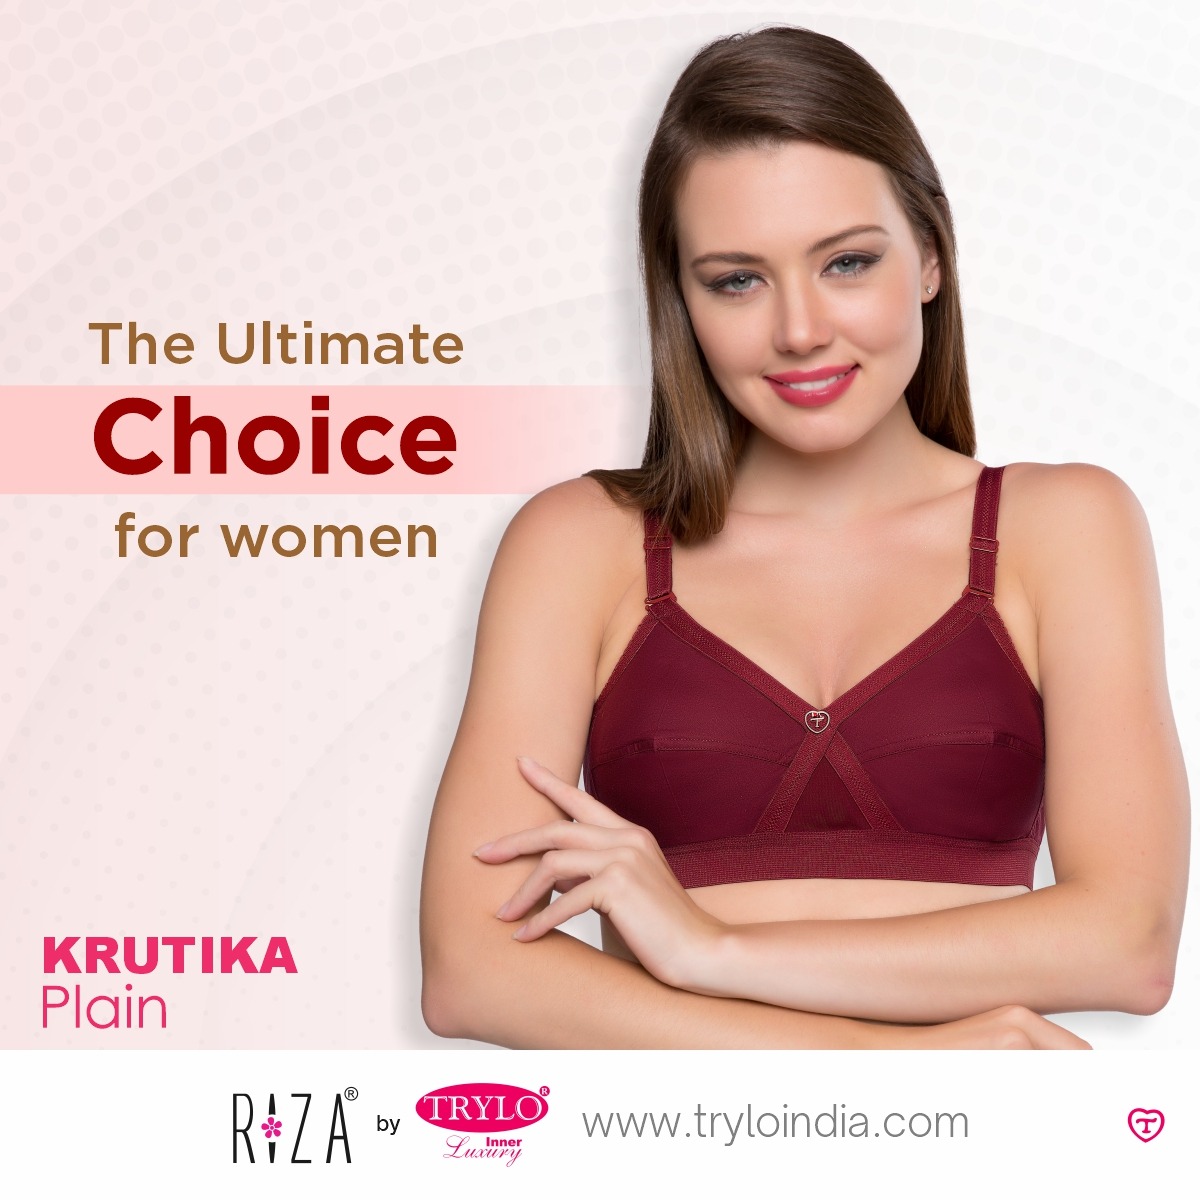 Trylo Intimates on X: Krutika Plain bra, a 100% cotton bra